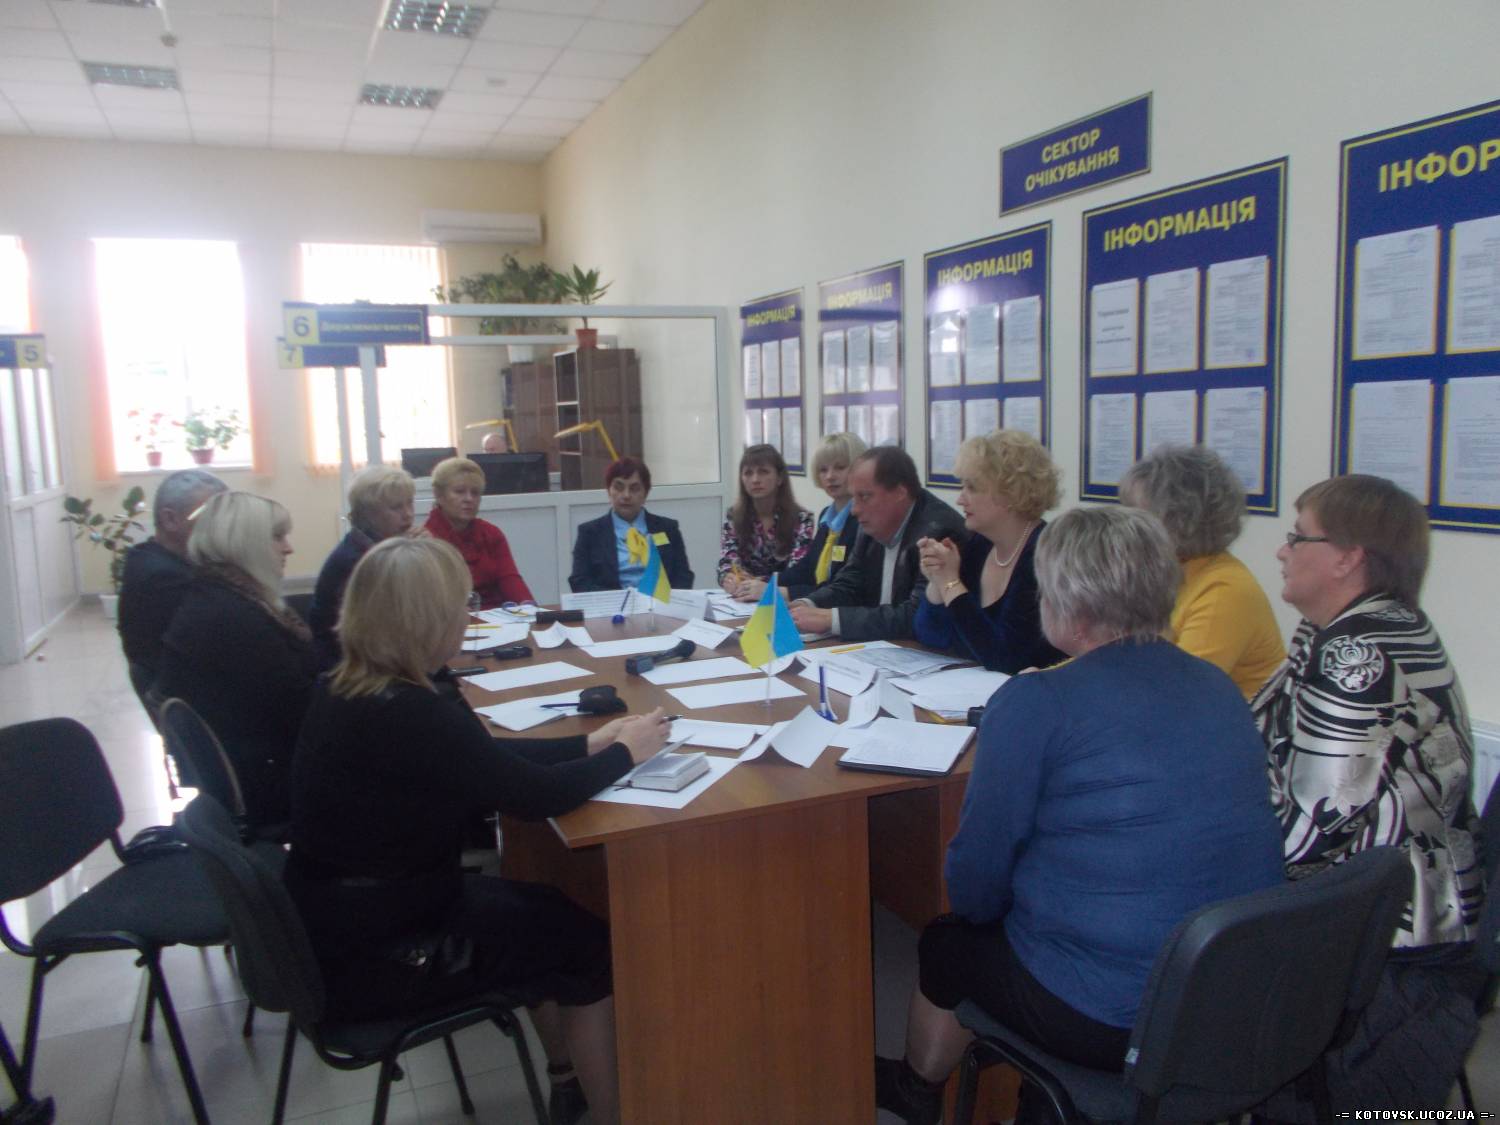 Круглый стол по вопросам работы Центра административных услуг и развития всех сфер хозяйственного комплекса Котовска.